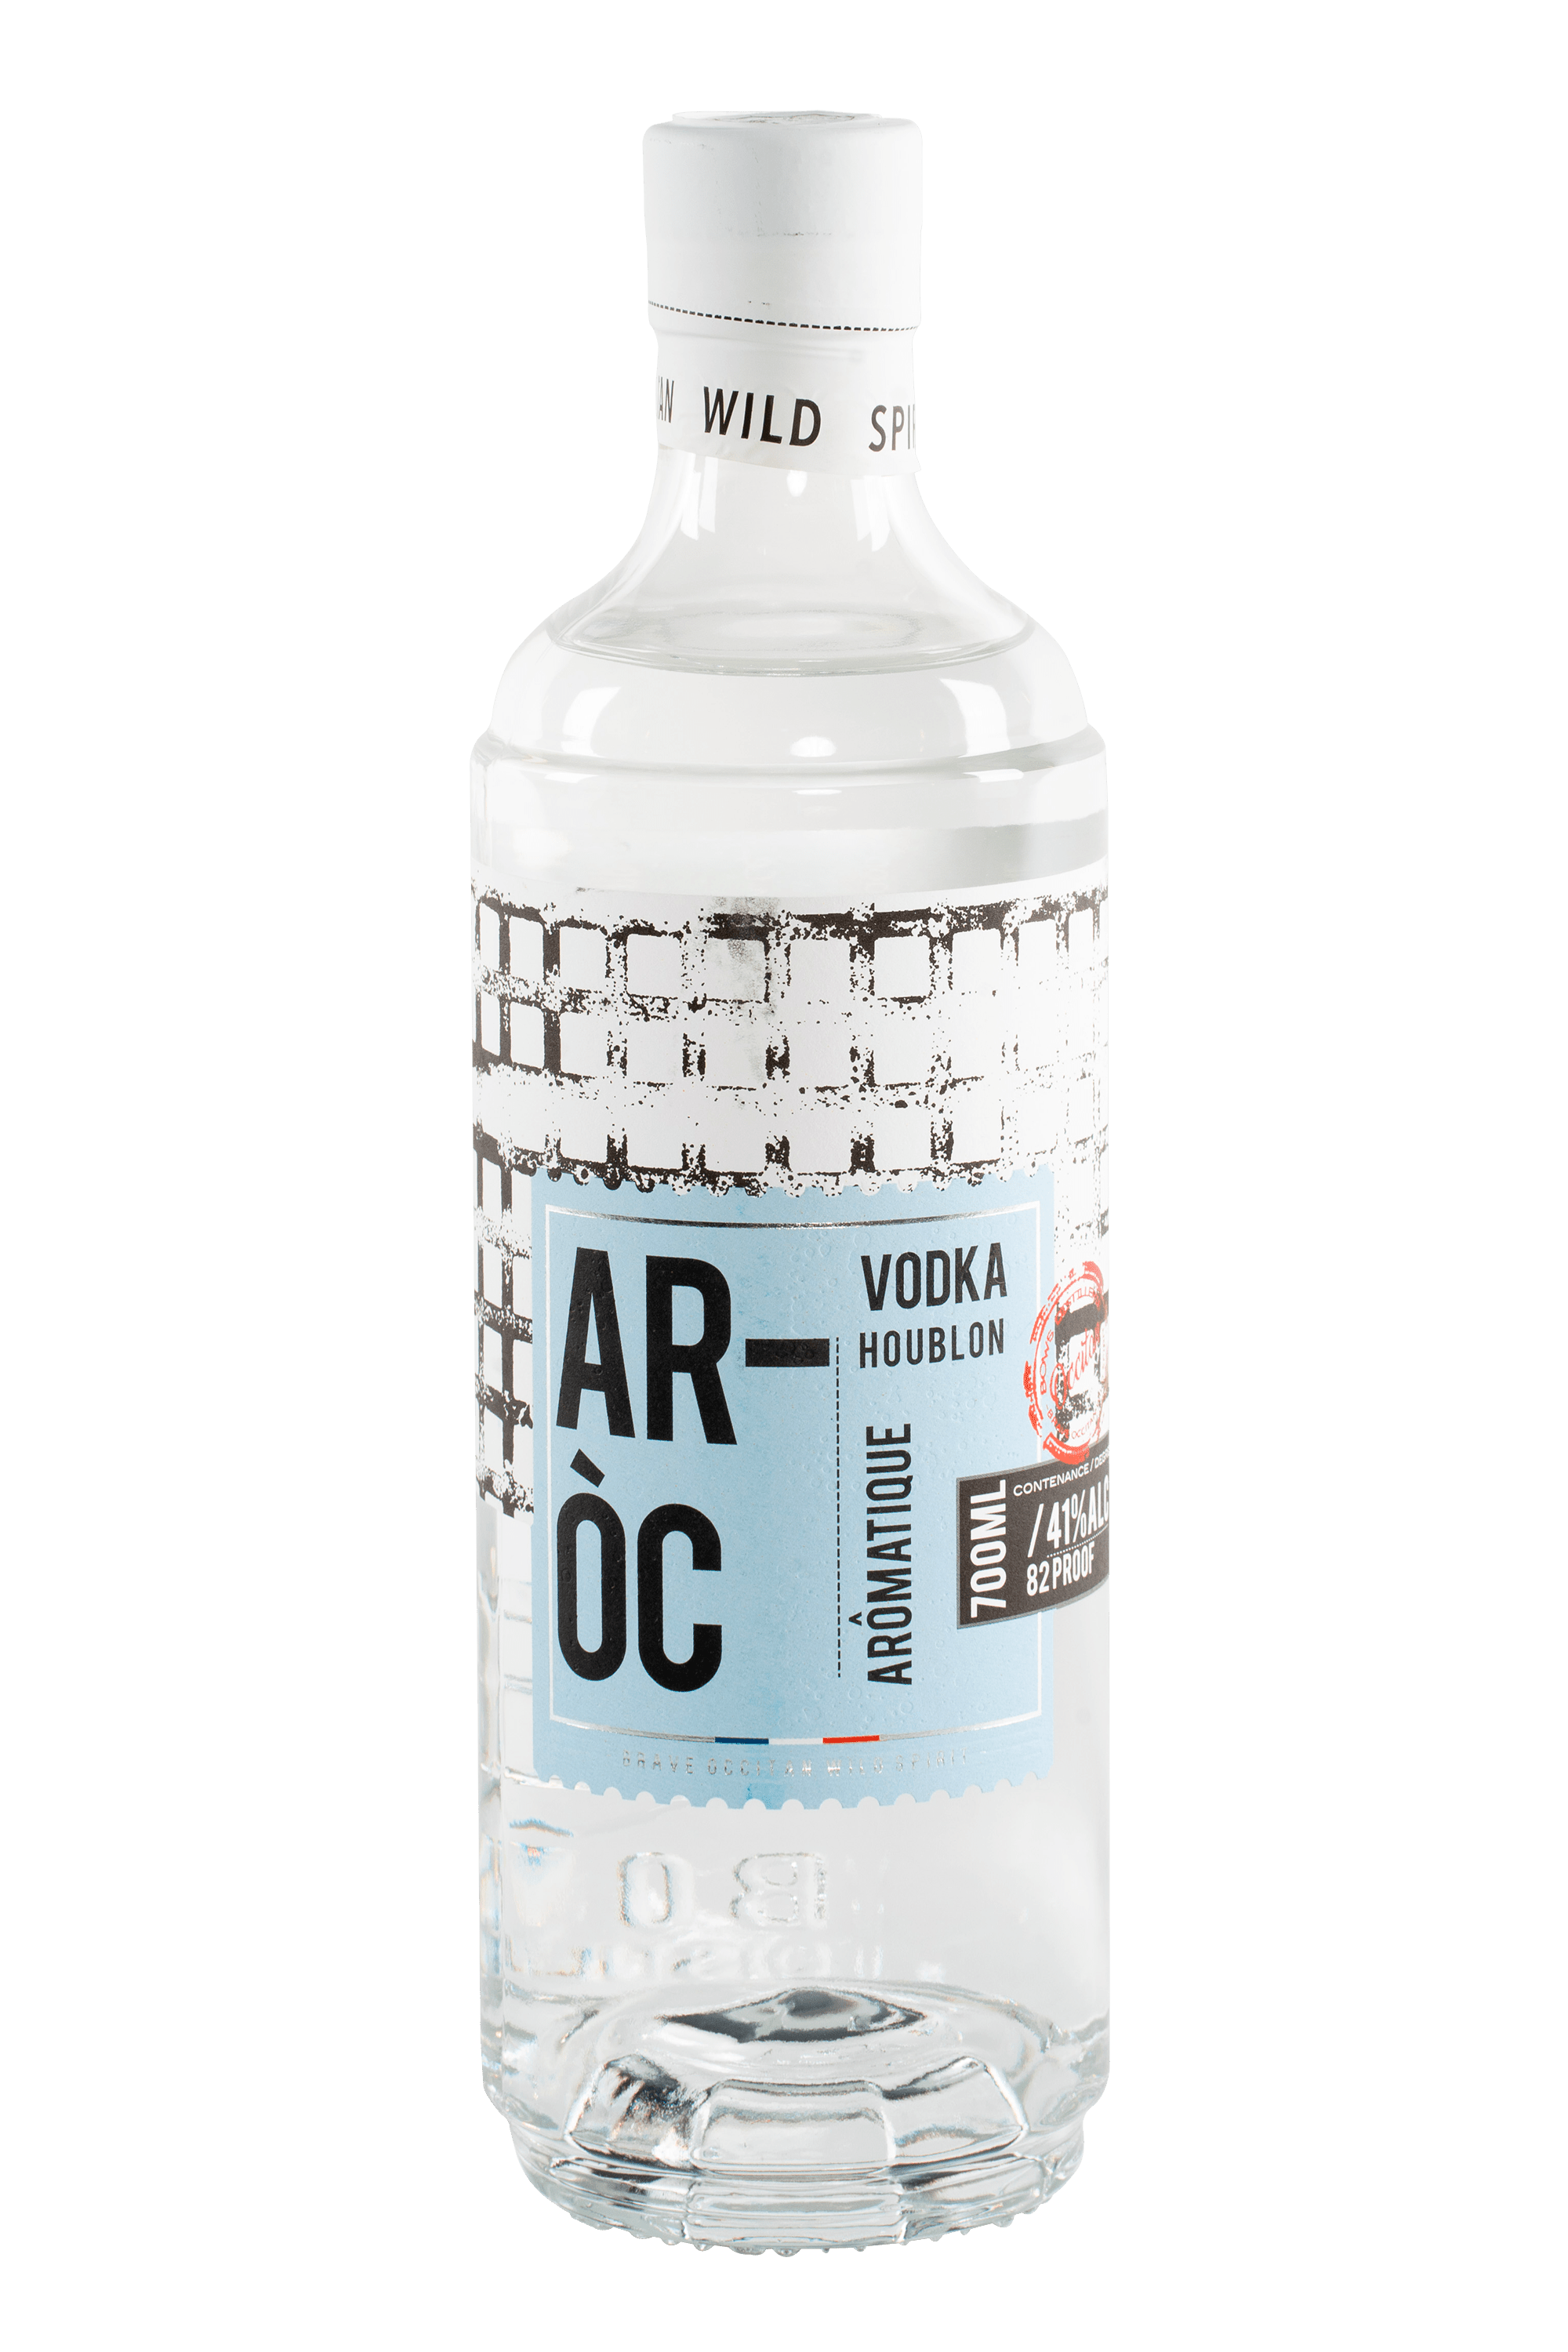 Bouteille de vodka française ai houblon AR OC de la distillerie occitane Bows